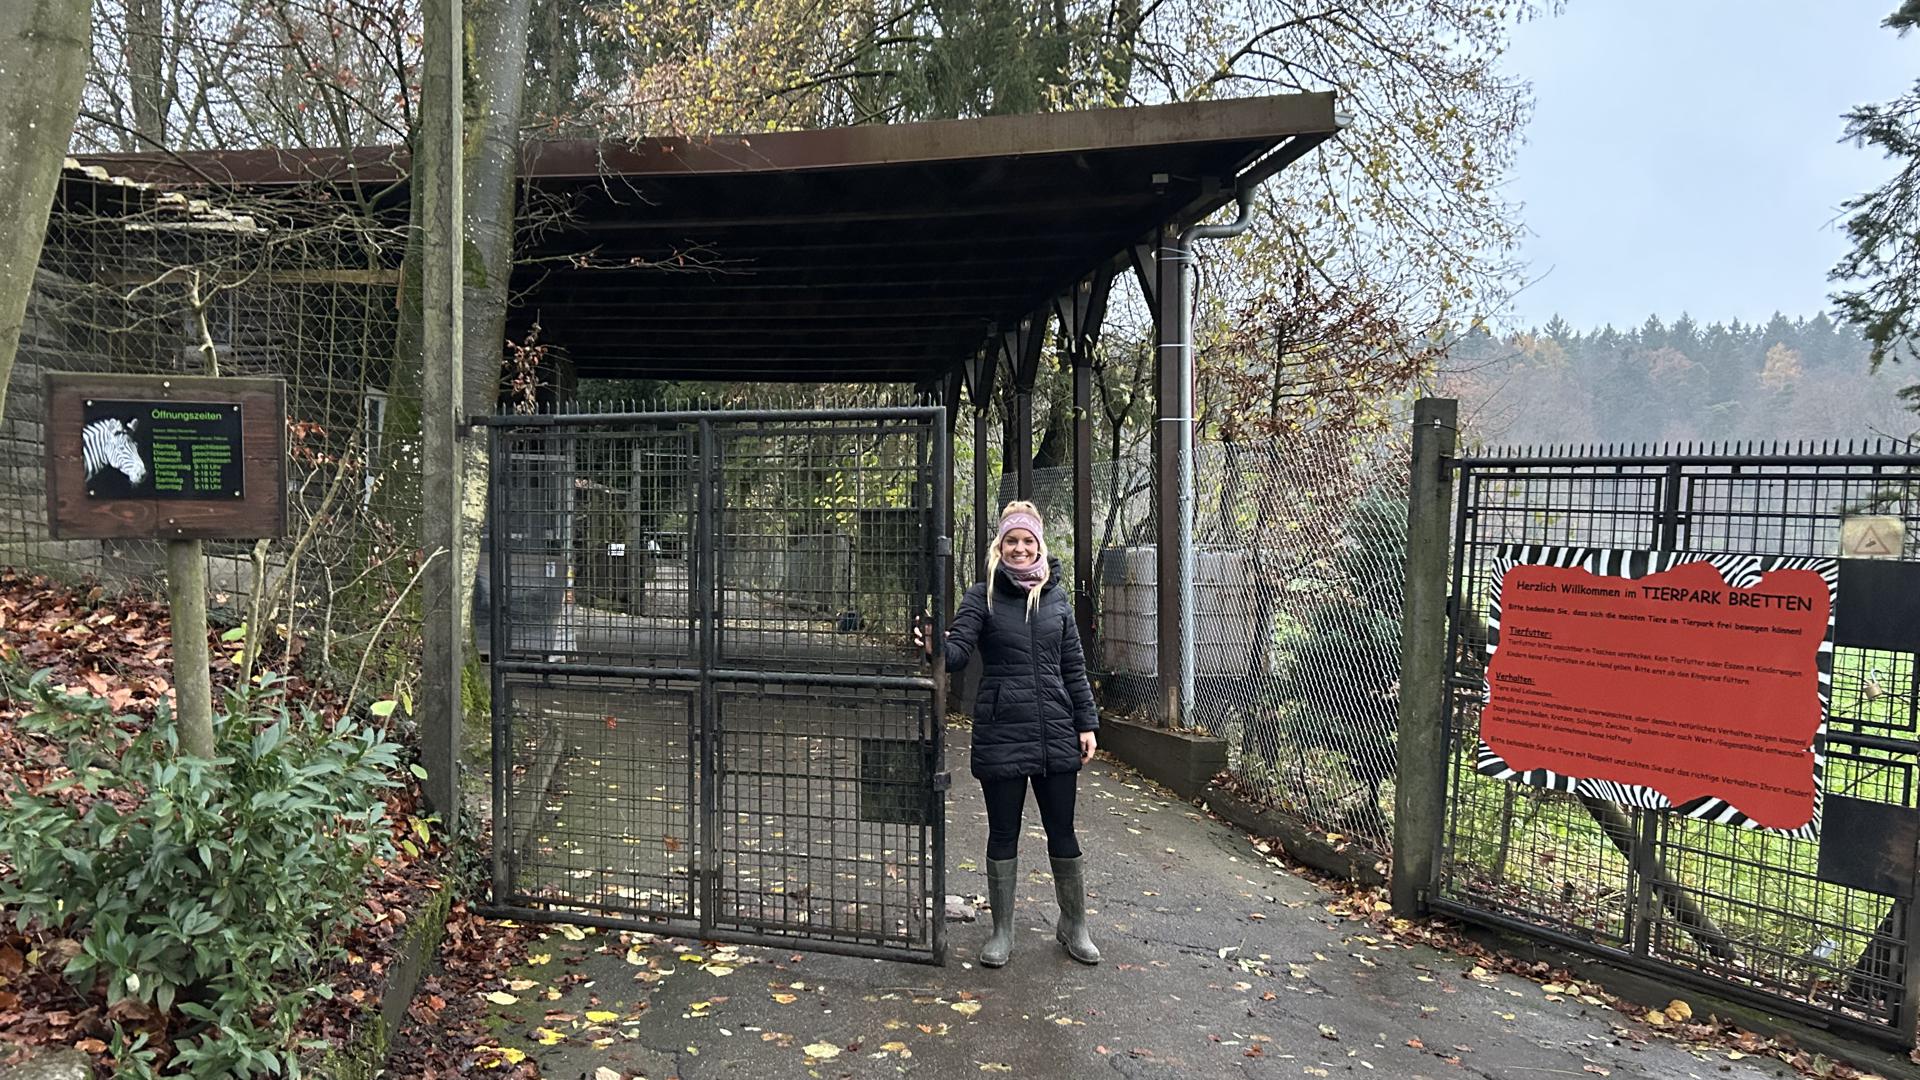 Betreiberin Tamara Willig steht am Eingangstor zum Tierpark Bretten.